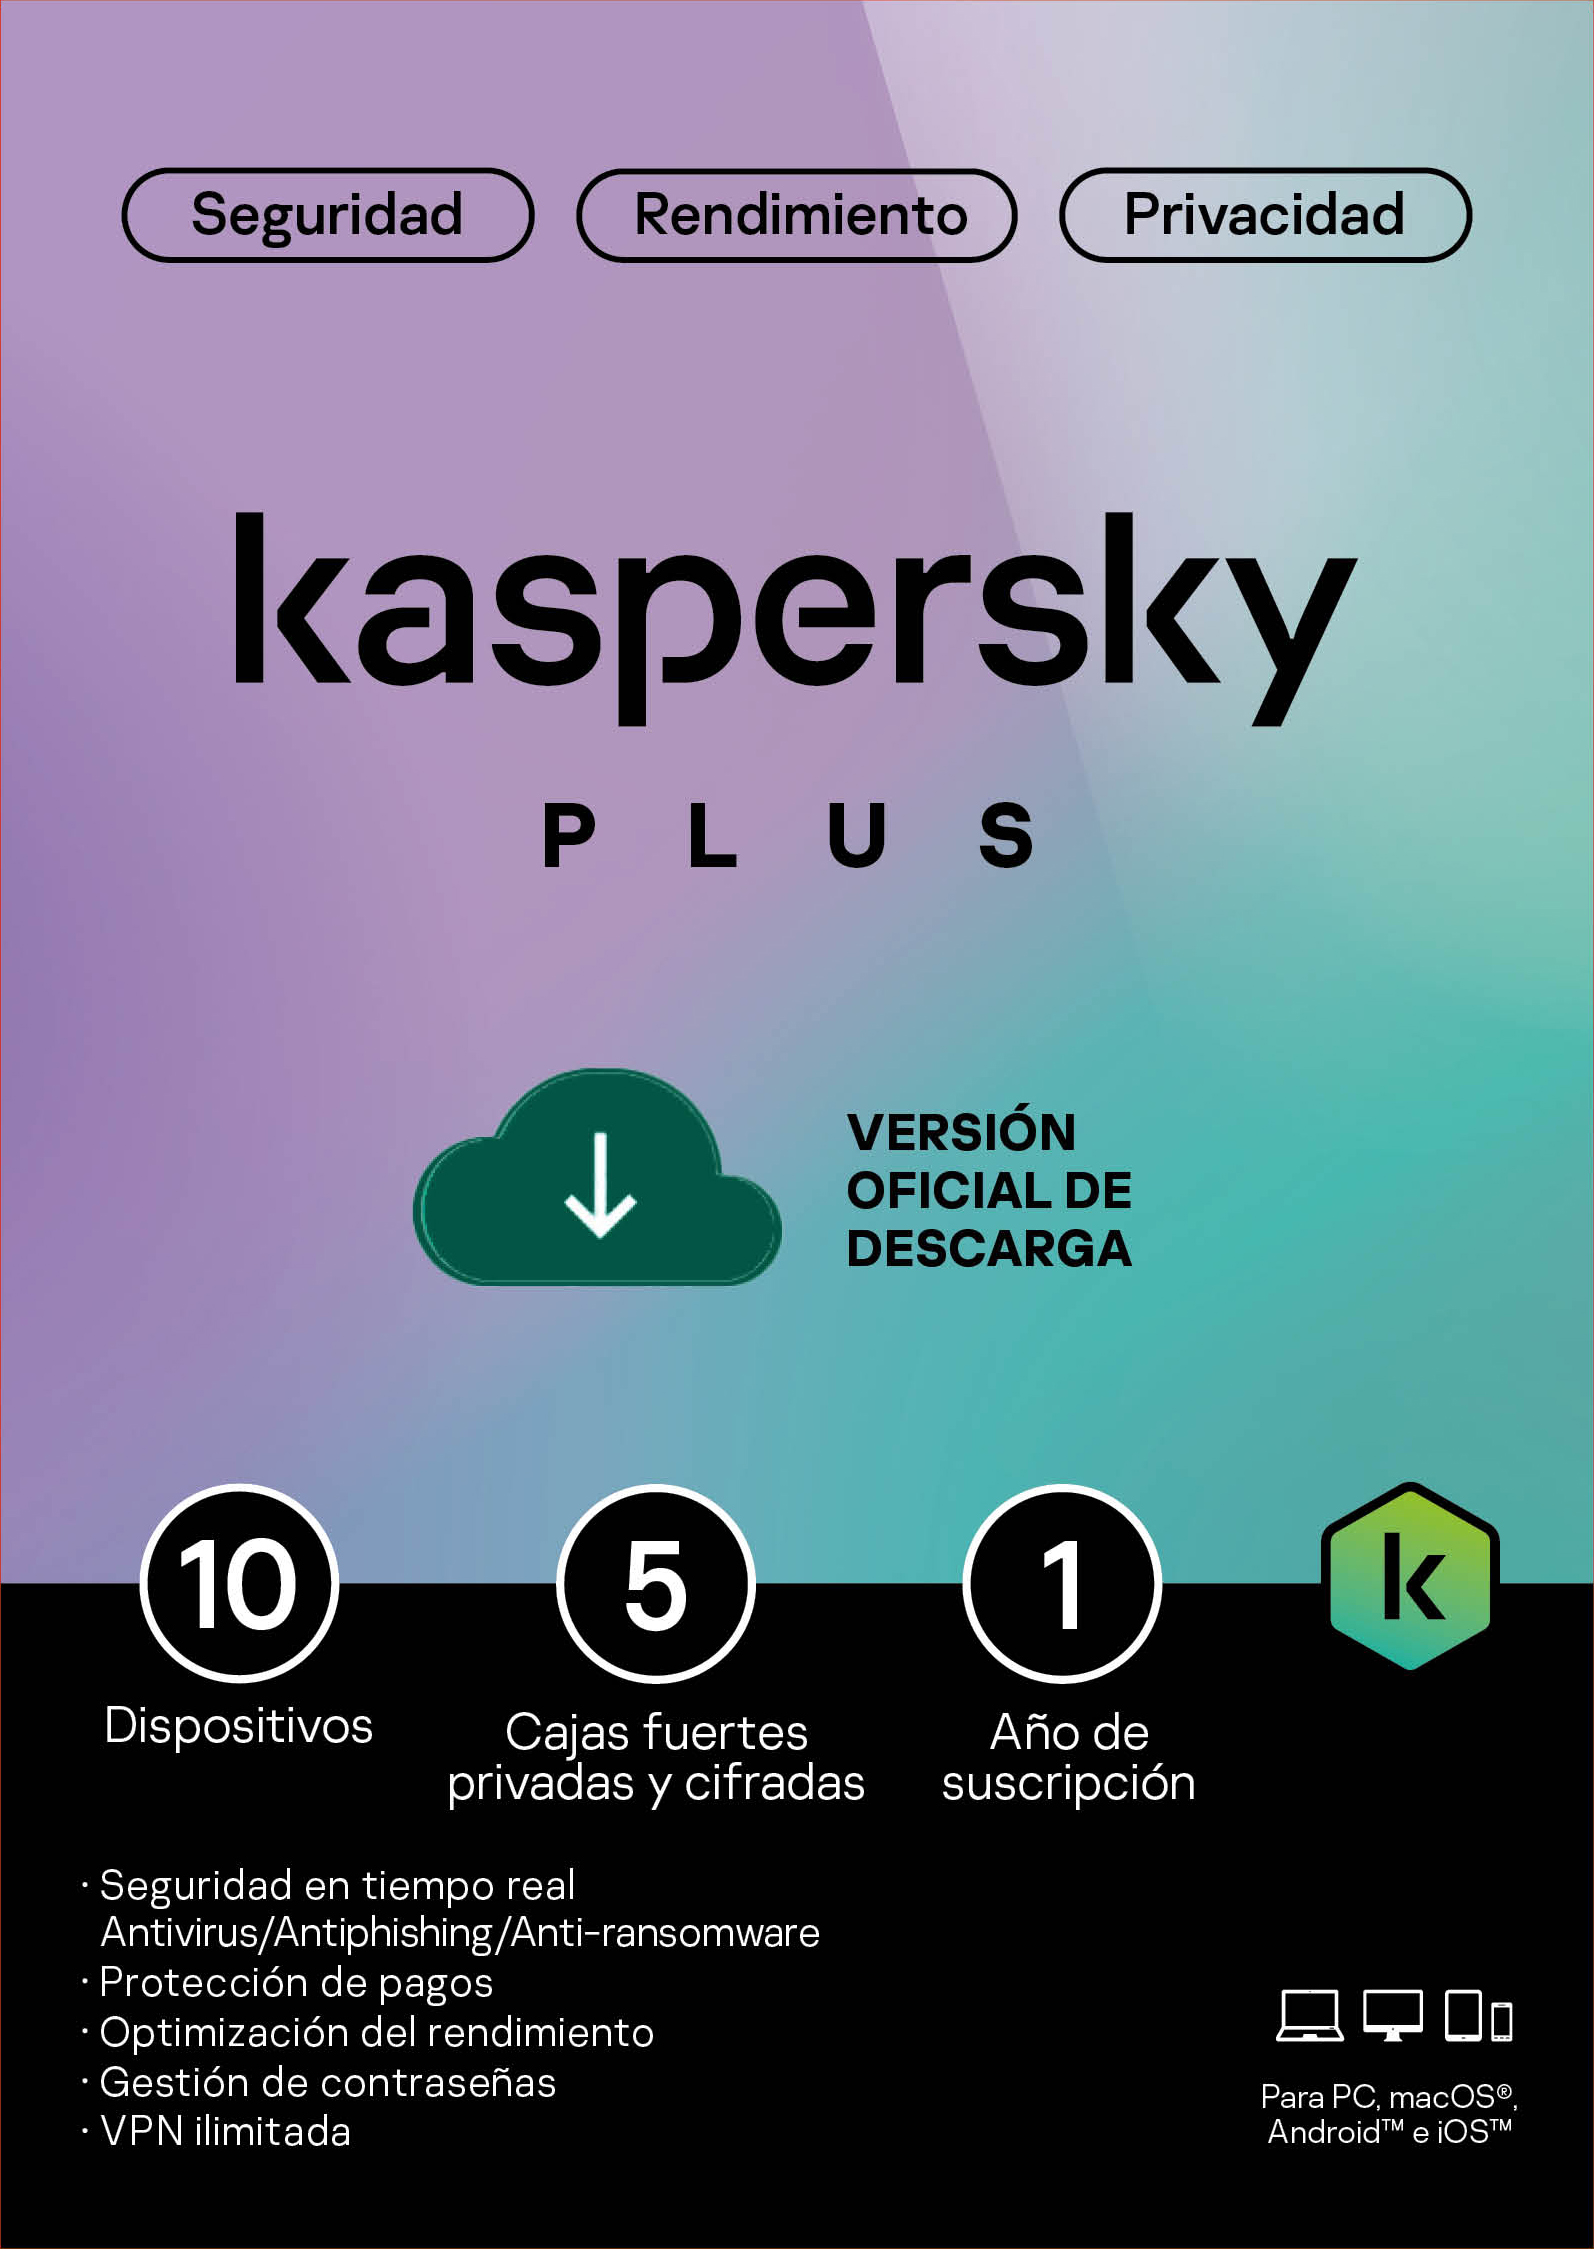 Licencia Kaspersky Plus 10 dispositivo por 1 año